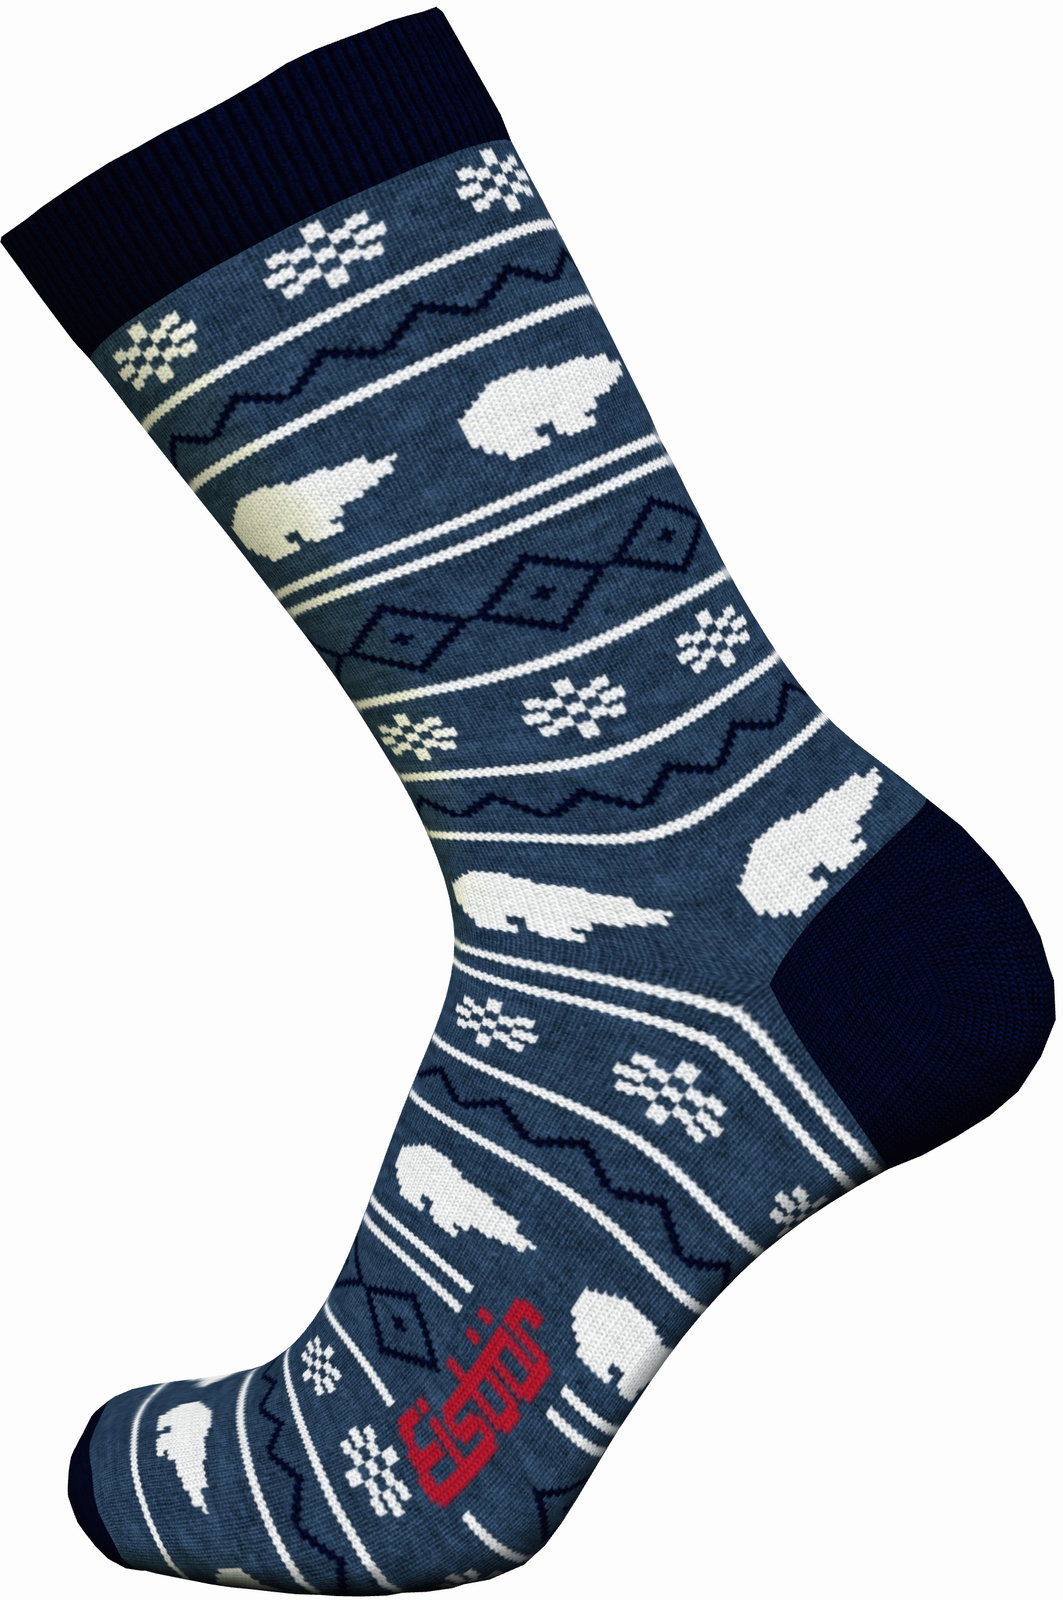 Ski Socken Eisbär Lifestyle Jacquard Avio/Navy-Grey/White 39-42 Ski Socken